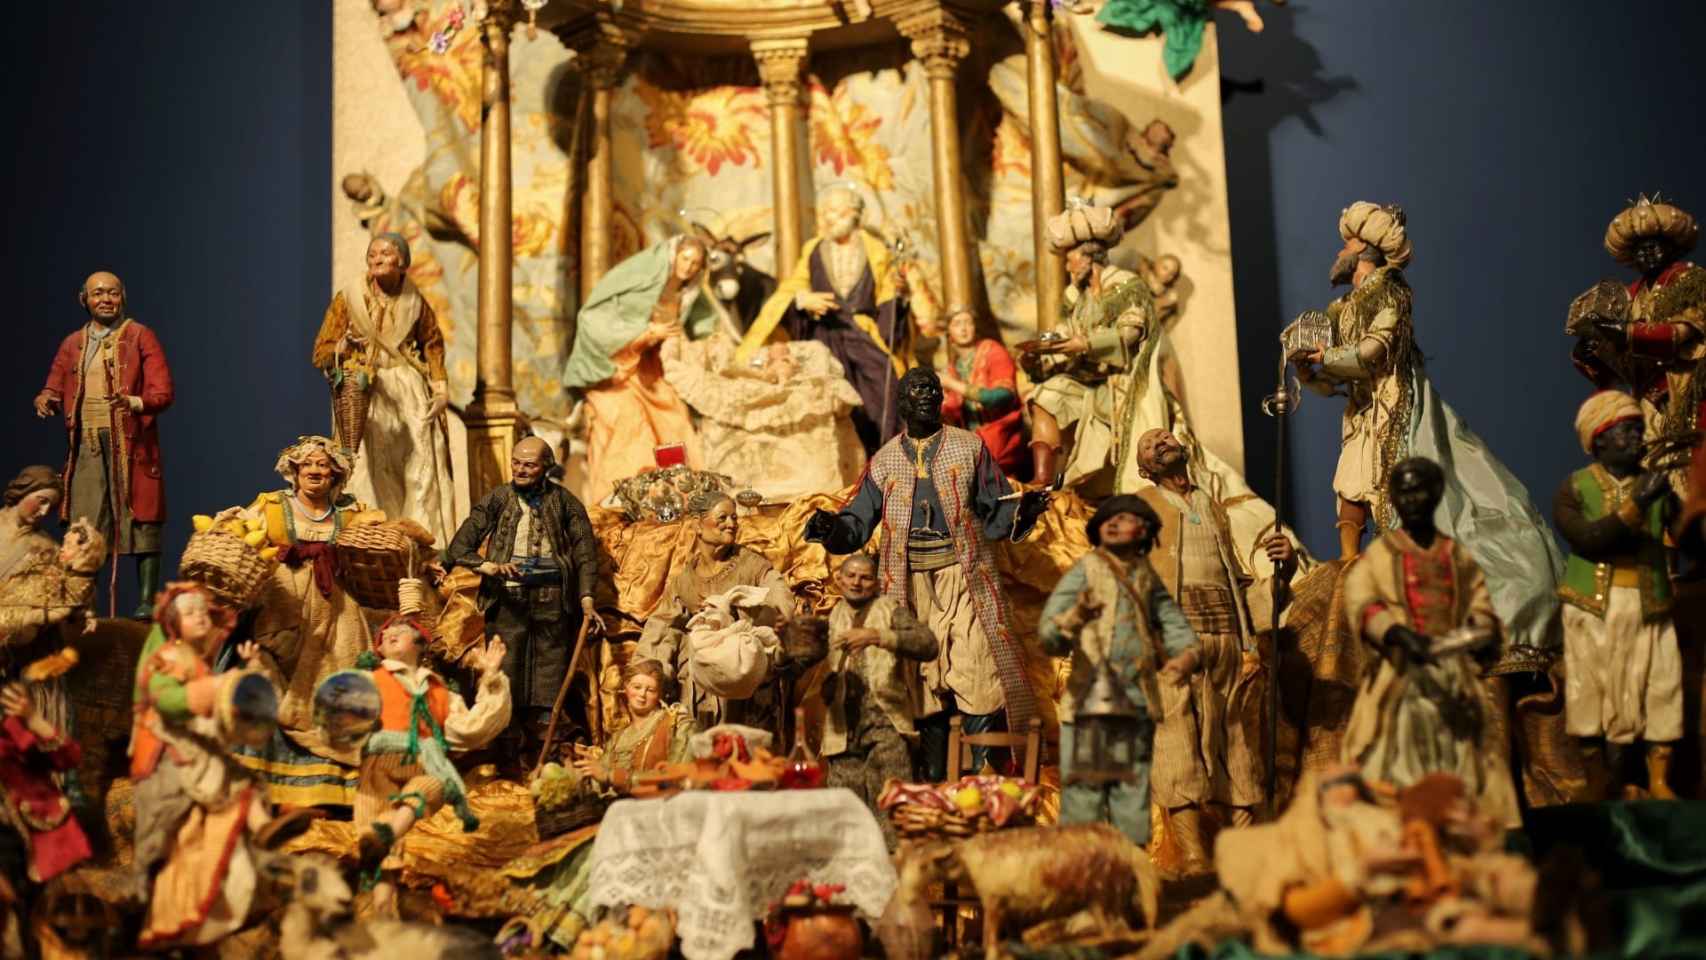 Las mejores imágenes del bello belén napolitano que se expone en el Museo del Greco de Toledo